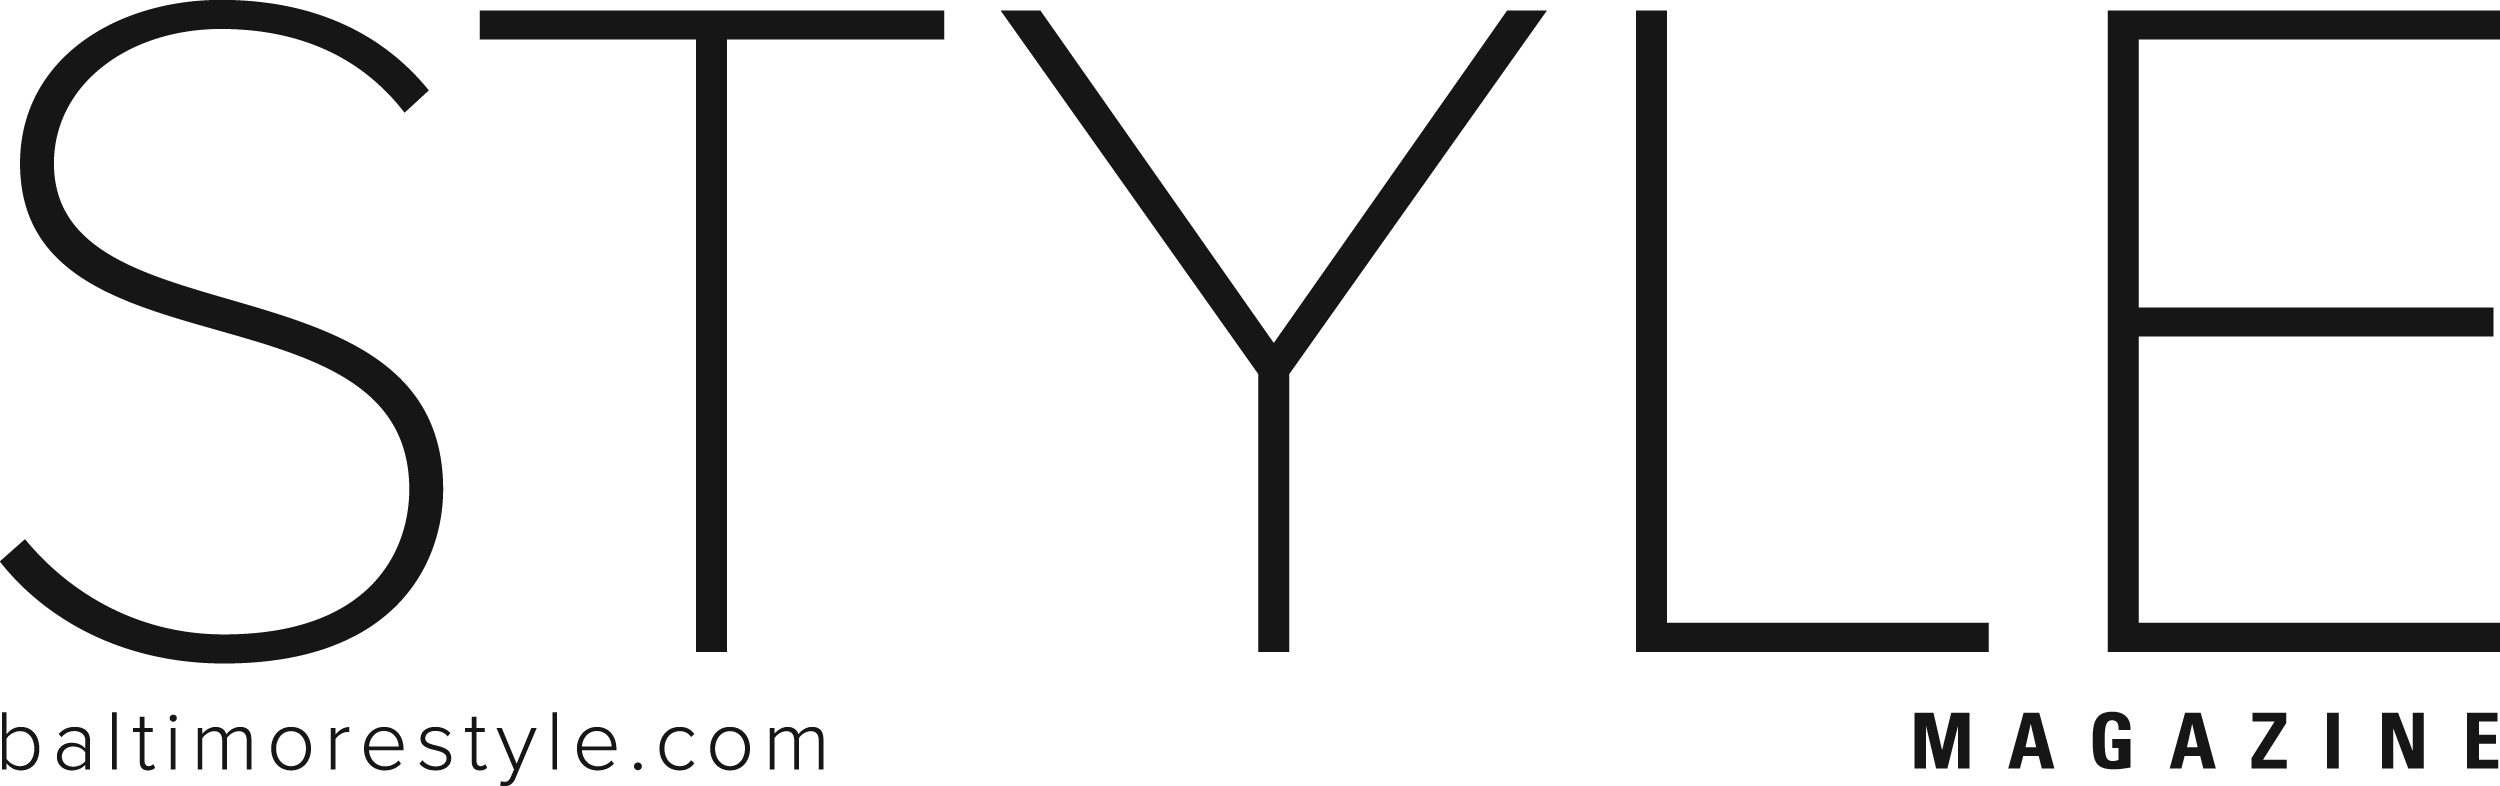 Style Logo